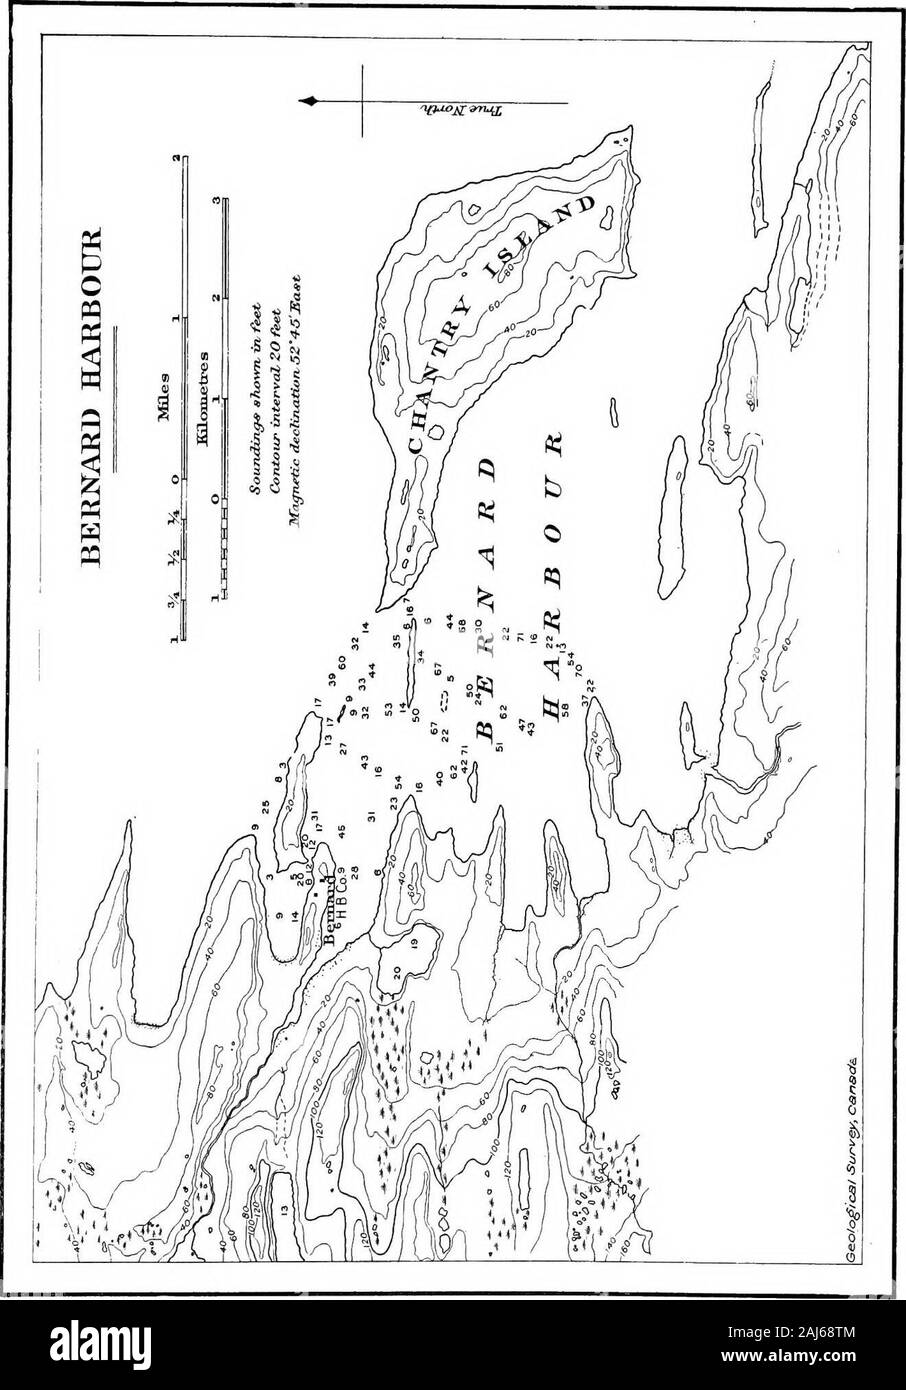 Bericht der Kanadischen Arktis Expedition 1913-18. Grantley Harbor, Alaska, von Commander Trollope 1854 befragt. Von Admiralty Chart No. 693, Yukon Eiver zu Point Barrow, einschließlich Bering Strait. Sondierungen in klafter. Krustentiere leben n27? Platte^^^^^^^* fy_i-^/f ^-;! j.^^ 1y (CJ^^-rt/-?-{^-. ^-^ Ich iM Js-^^^~~-: 5^1 IN-H/V M-. isi % •*^^ U-? Ohp-..5: ..,,,,^o--_w s I • "Q, /-^&gt;.* r ID IH C (0 Ctf i c (&lt;^o^*^^t" "^** "^^a-"V f o 1-1/o Ich/^C f 2 -- e d u • s." ^__^ E. Y^^^^^^^^^^^^^-1 V ".." RF-K^1f Il f^r-[/iL Stockfoto